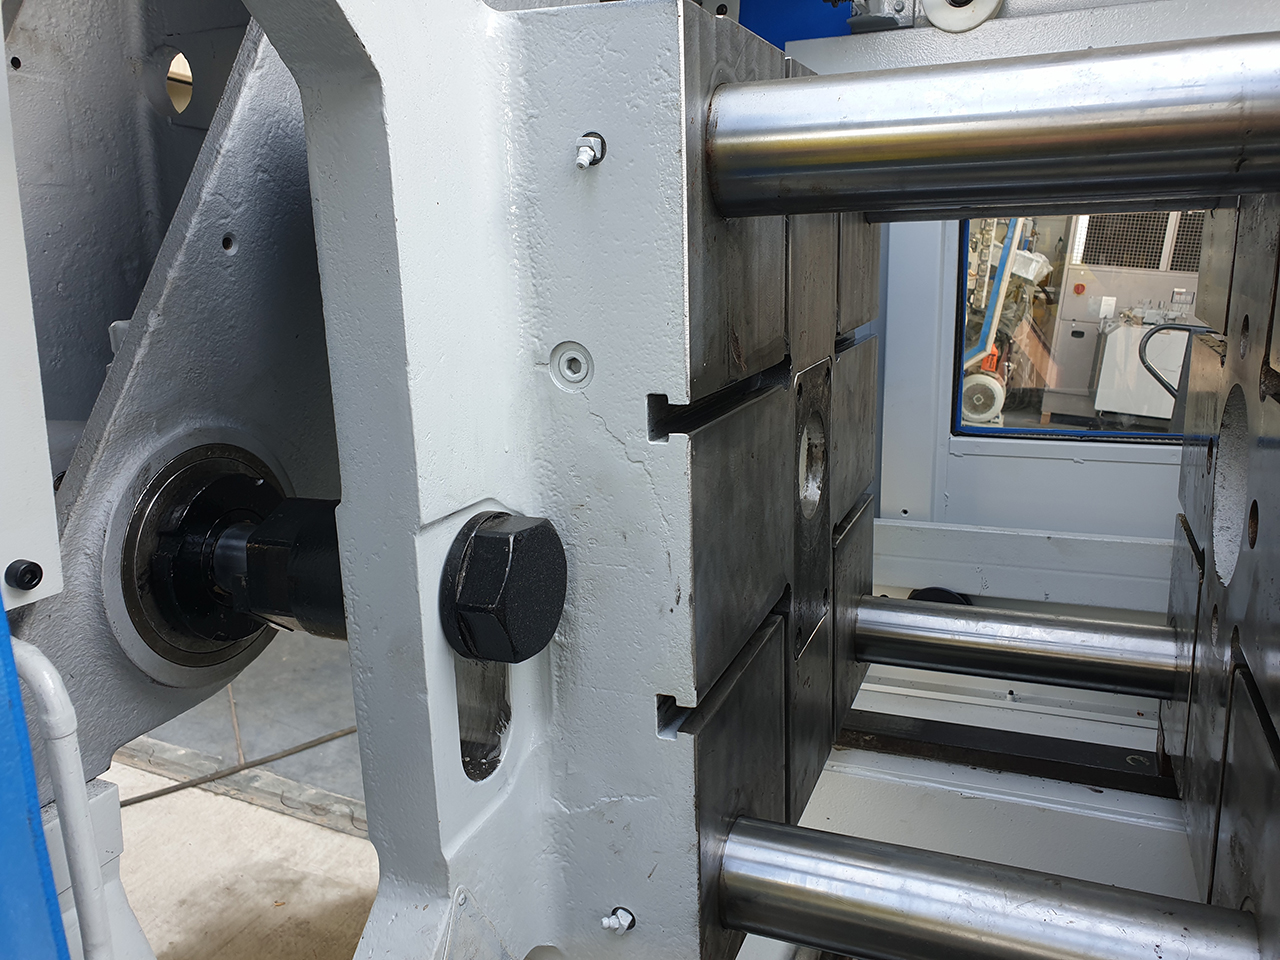 Frech DAW 80 S-RC Warmkammer Druckgießmaschine WK1409, gebraucht